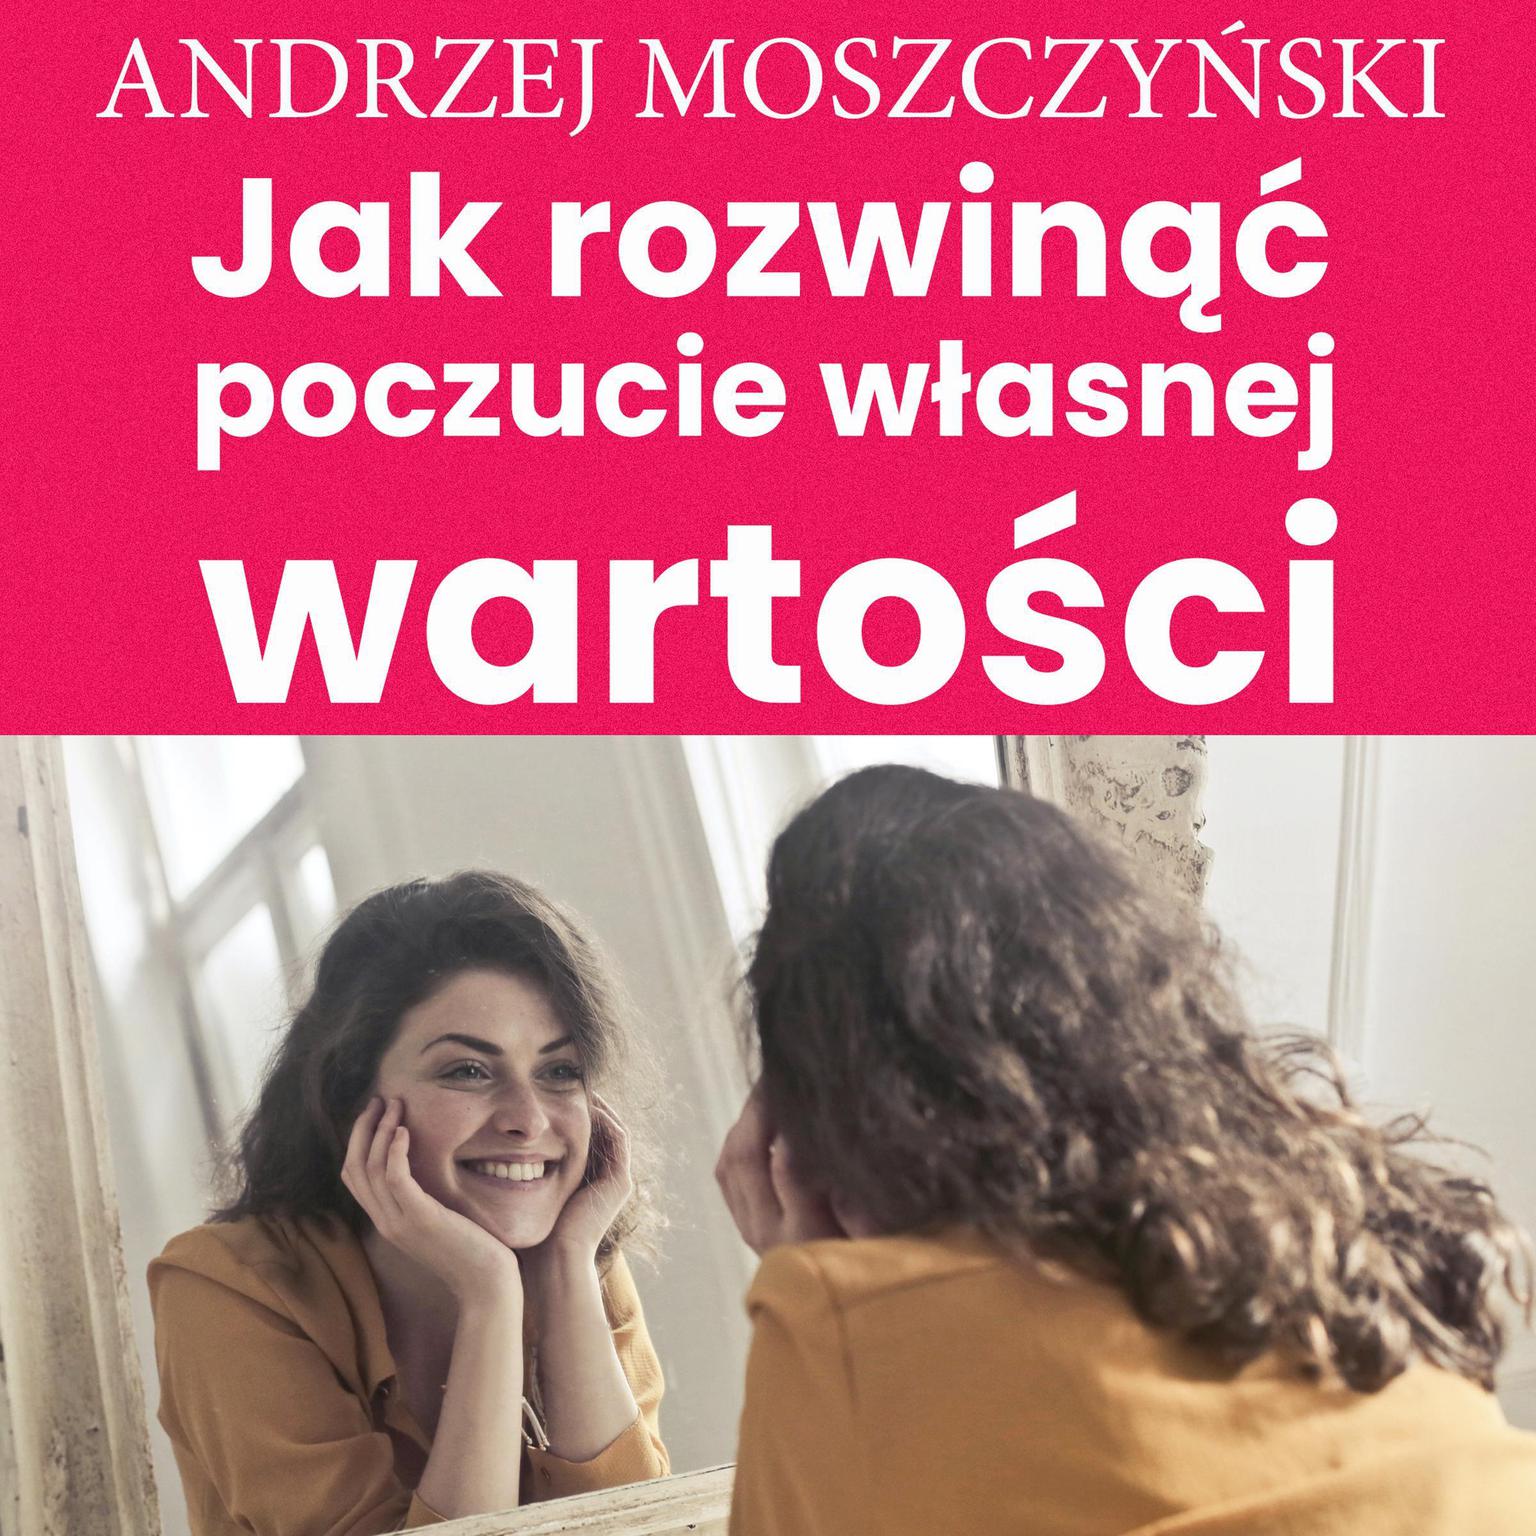 Jak rozwinąć poczucie własnej wartości Audiobook, by Andrzej Moszczyński